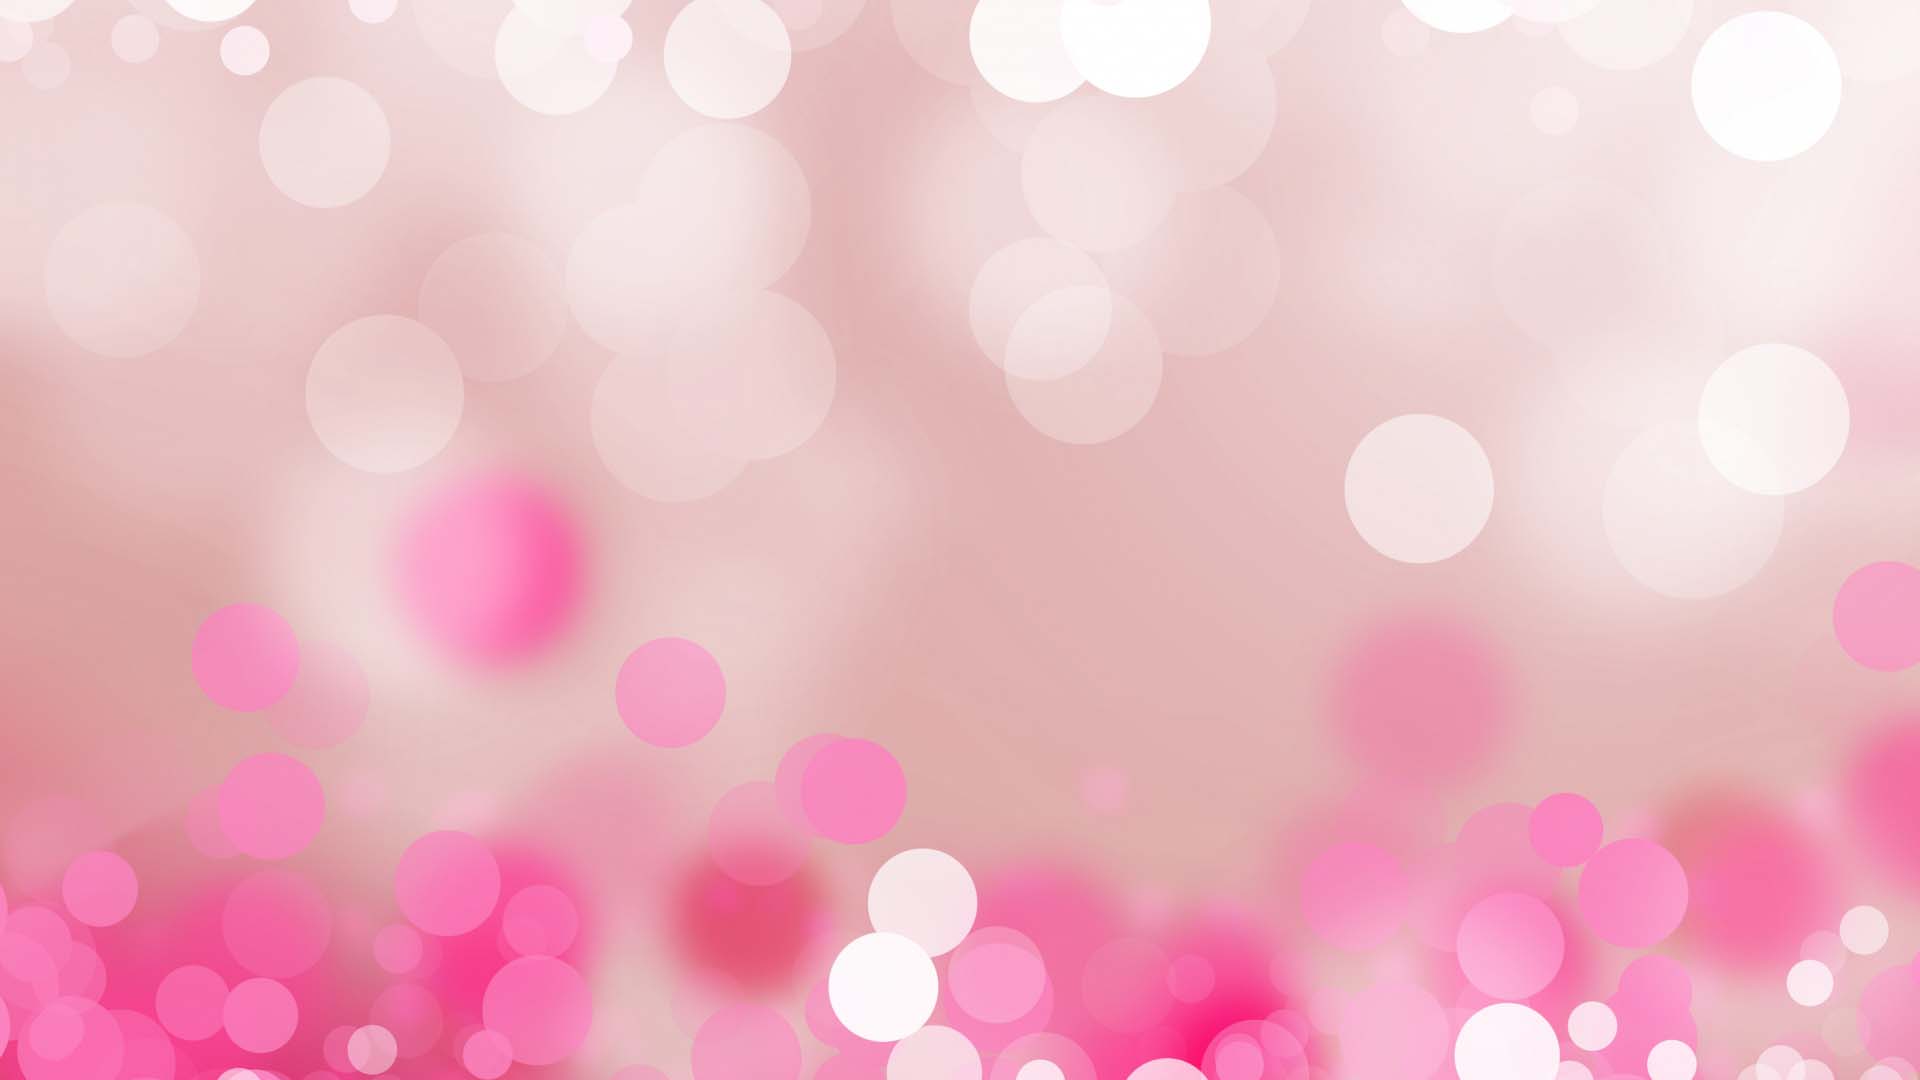 Hình nền màu hồng dễ thương: Những bức ảnh nền màu hồng dễ thương sẽ khiến trái tim bạn ngập tràn niềm vui và hạnh phúc. Hãy thử thay đổi hình nền của bạn với những bức ảnh nền này để tạo điểm nhấn cho chiếc điện thoại của mình. Sẽ thật đáng yêu và dễ thương khi bạn sở hữu những hình nền màu hồng tuyệt đẹp như thế này.